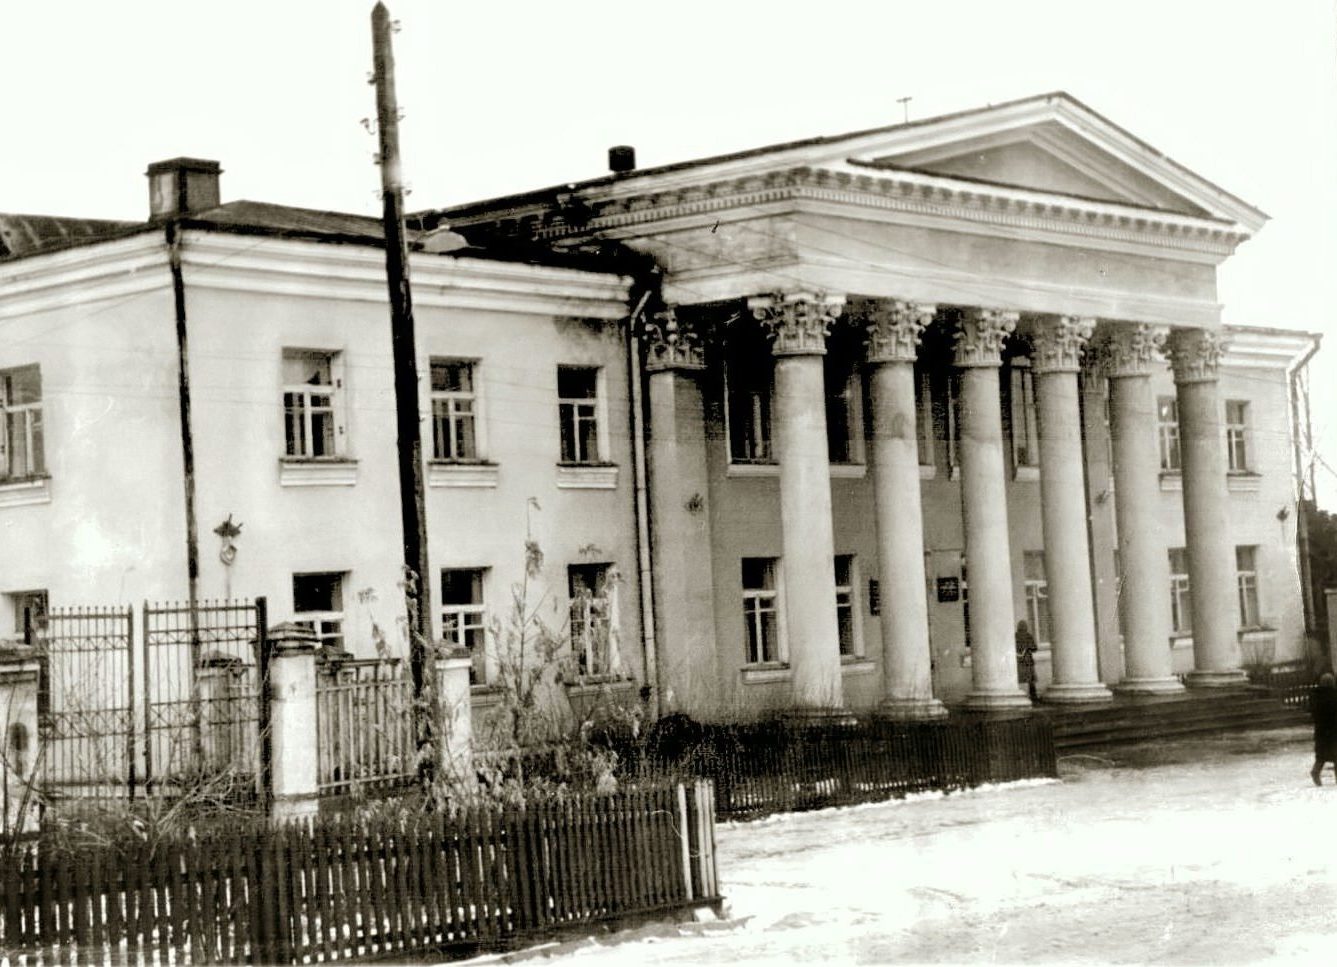 Реконструкция режевского центра началась со строительства Горкома партии в 1956 году